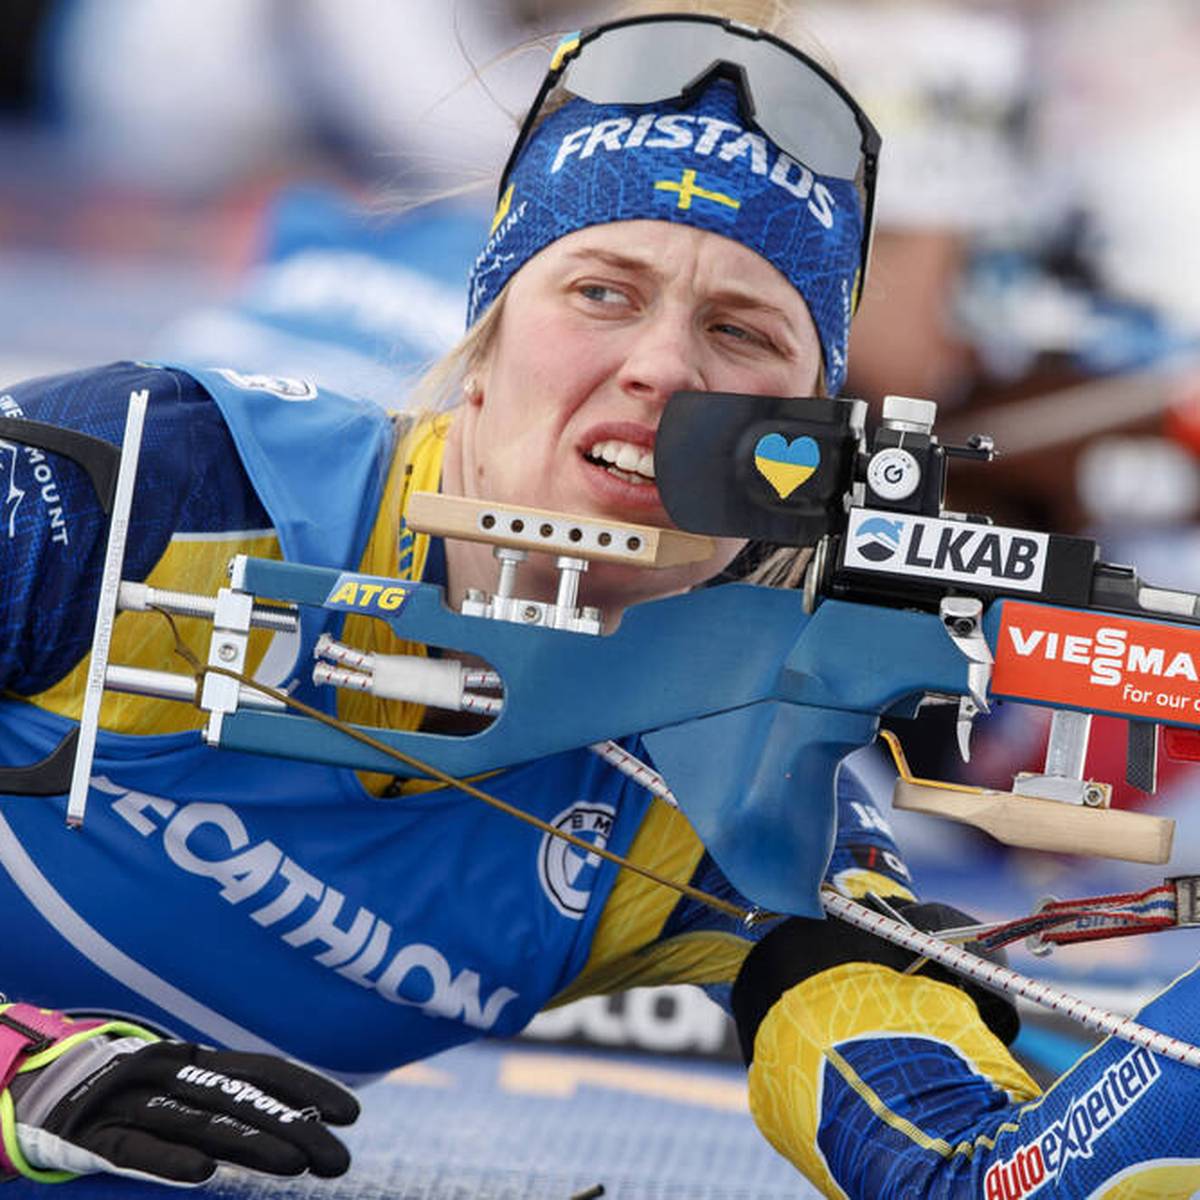 Für den anstehenden Winter beschließt der Biathlon-Weltverband umfassende Regeländerungen – und zieht damit den Unmut von Athletinnen und Athleten auf sich. 